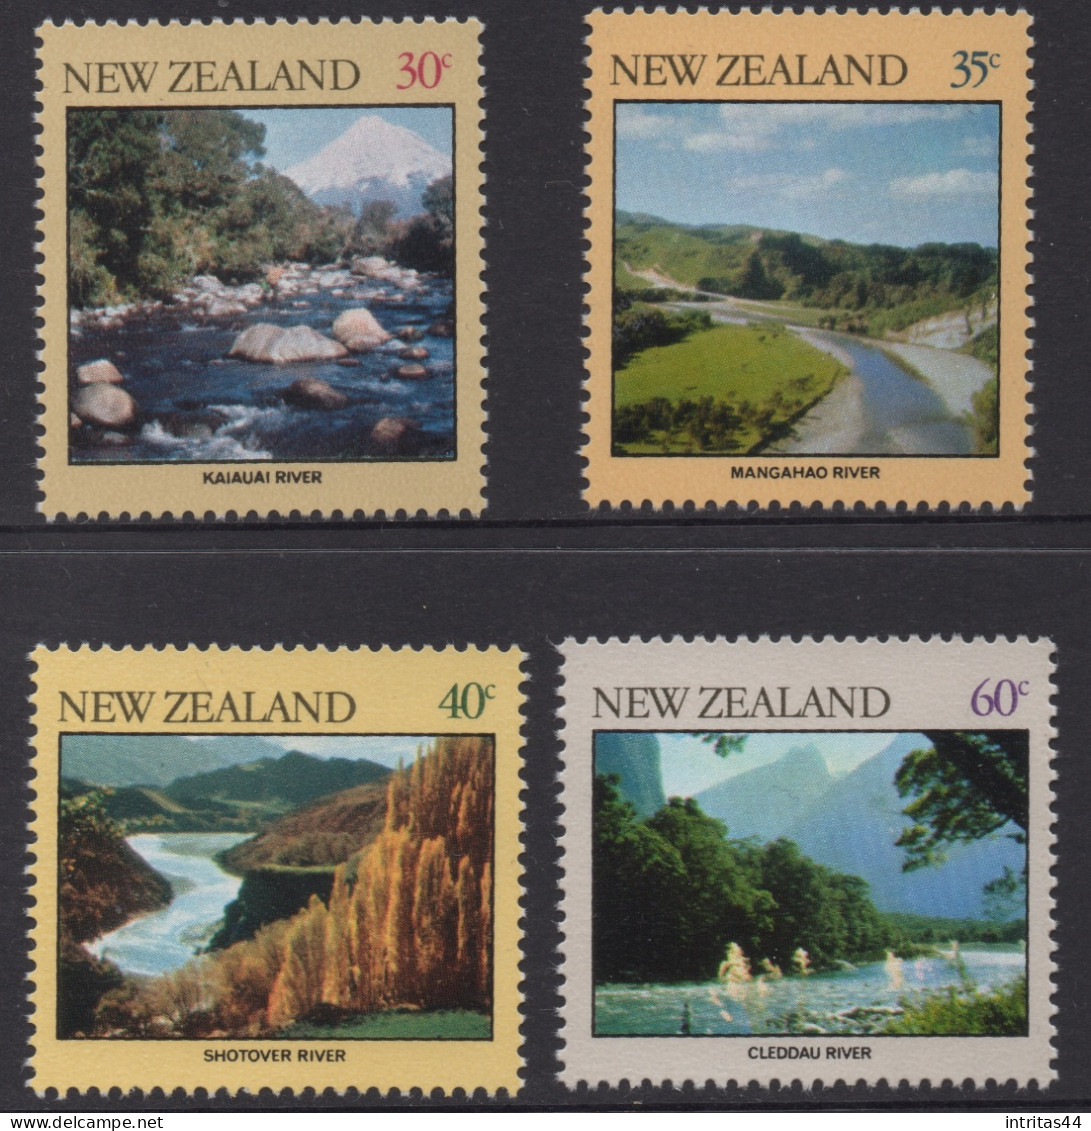 NEW ZEALAND 1981 " RIVERS " SET MNH - Neufs